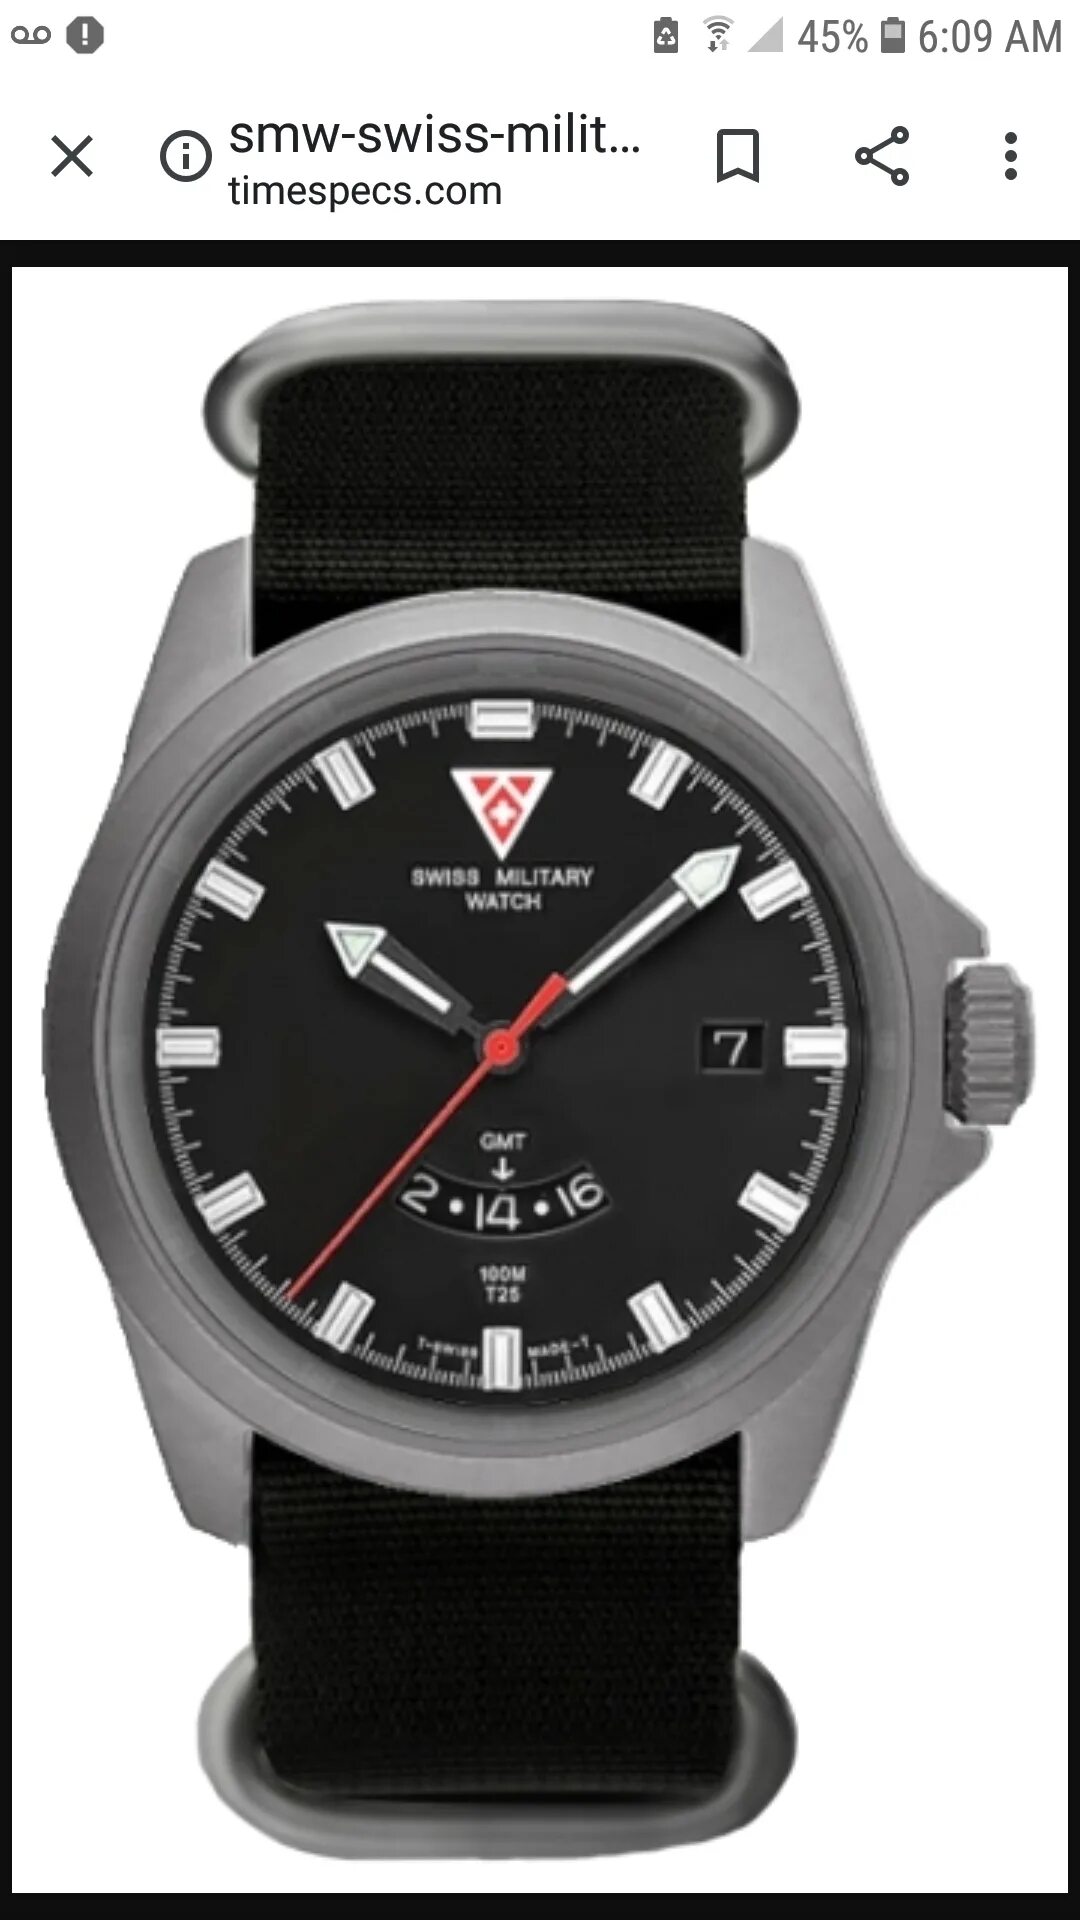 Часы т 25. Swiss Military watch t25. Часы SMW T-25. Наручные часы SMW Swiss Military watch t25.75.44.71. SMW Swiss Military watch Titan Diver.